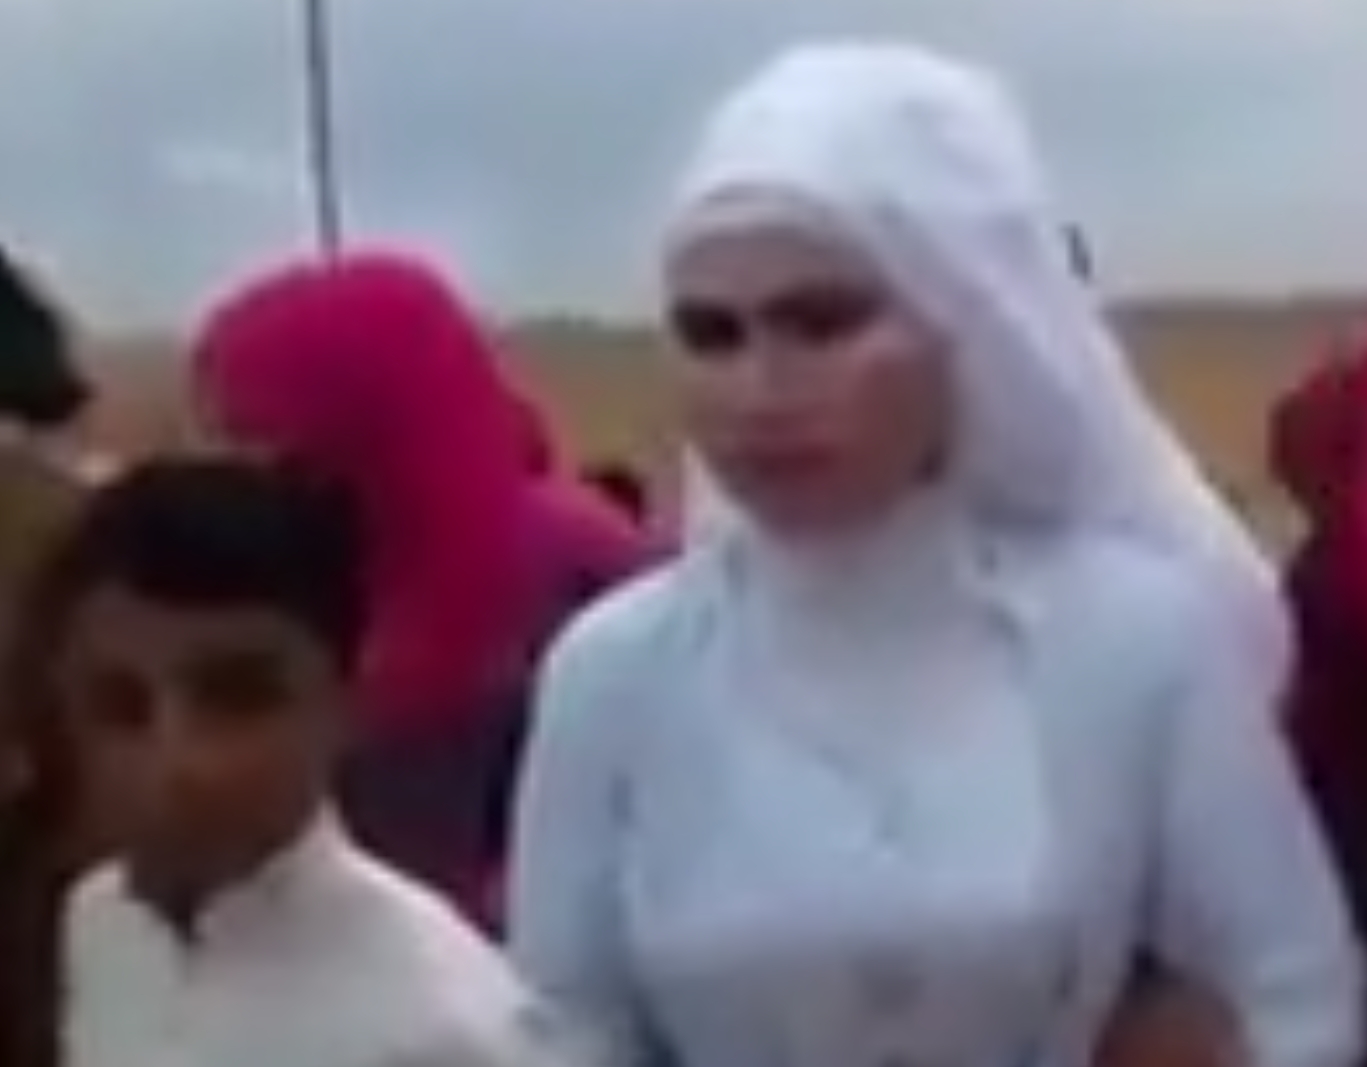 مقطع فيديو لعروس أكبر من زوجها بسنوات كثيرة في سوريا يثير جدلاًَ كبيرا